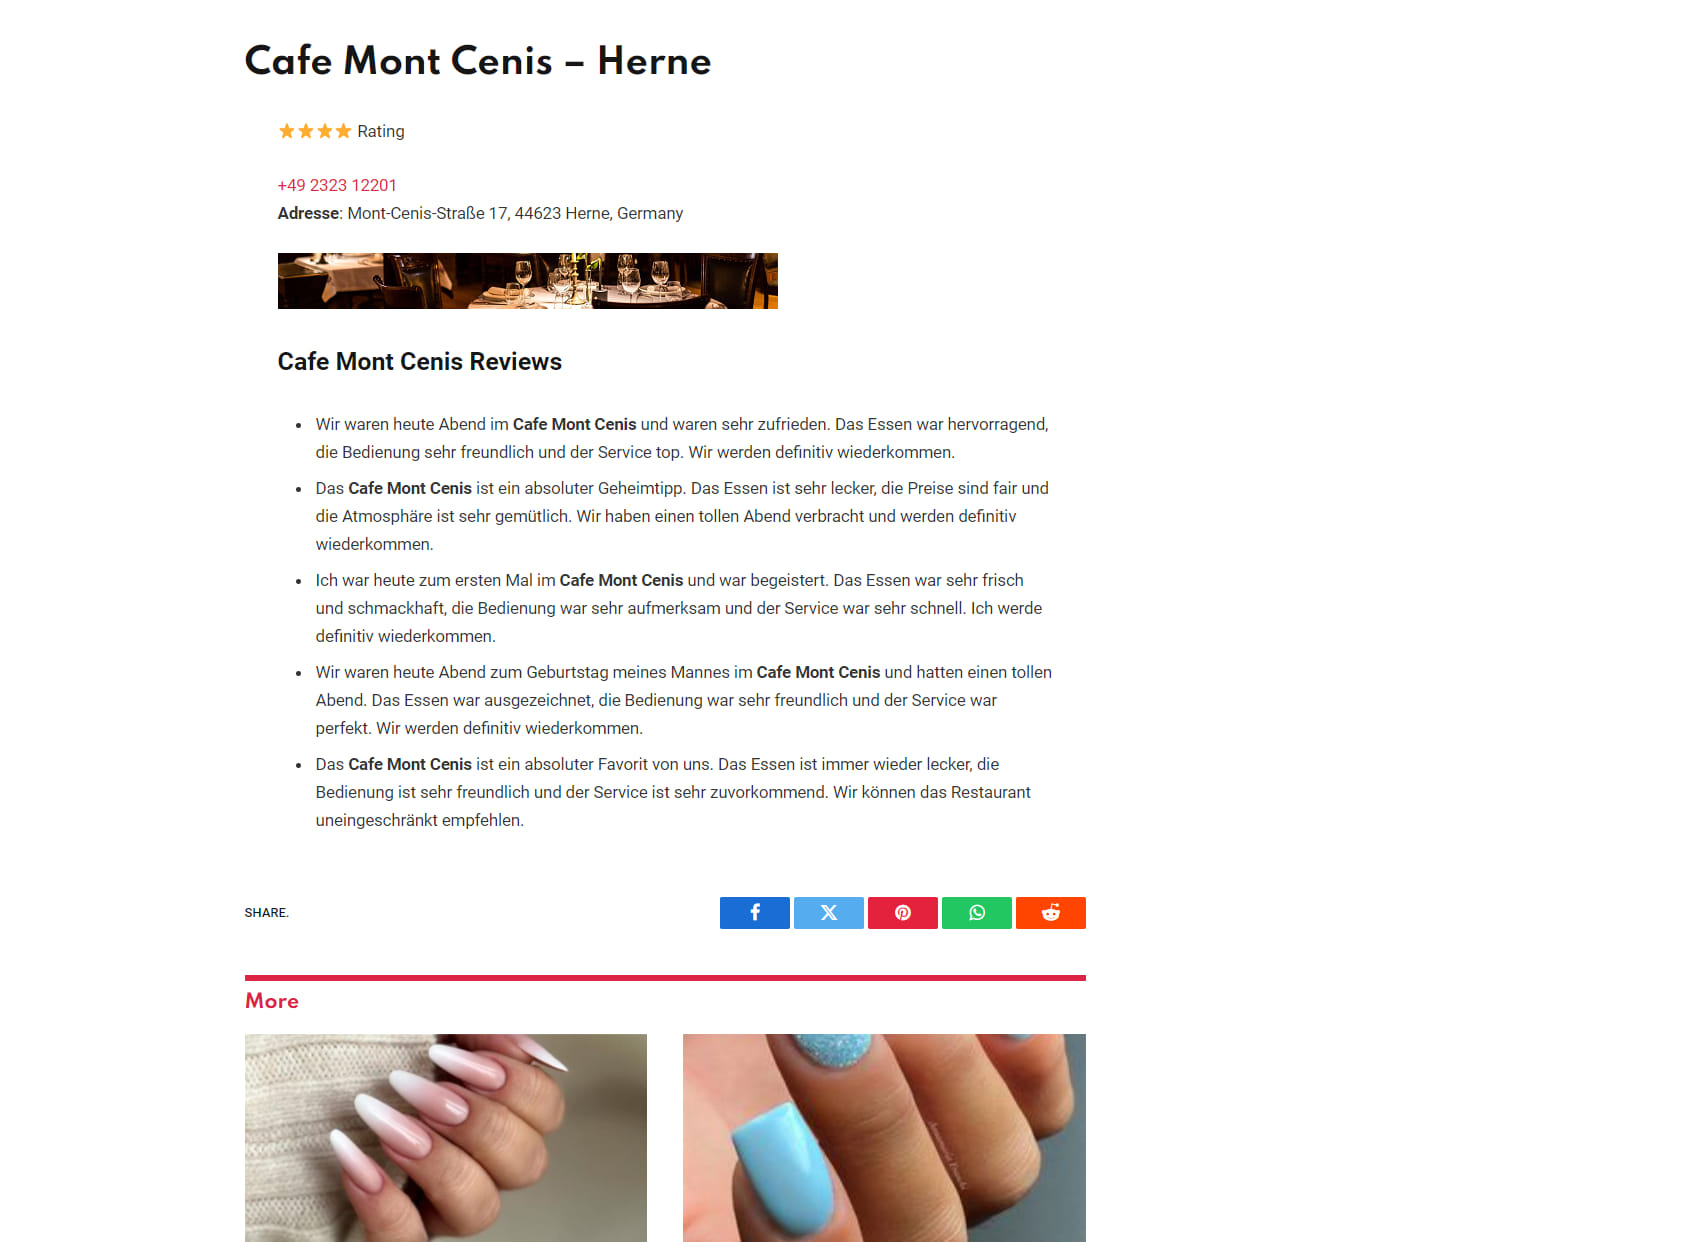 Cafe Mont Cenis - Herne